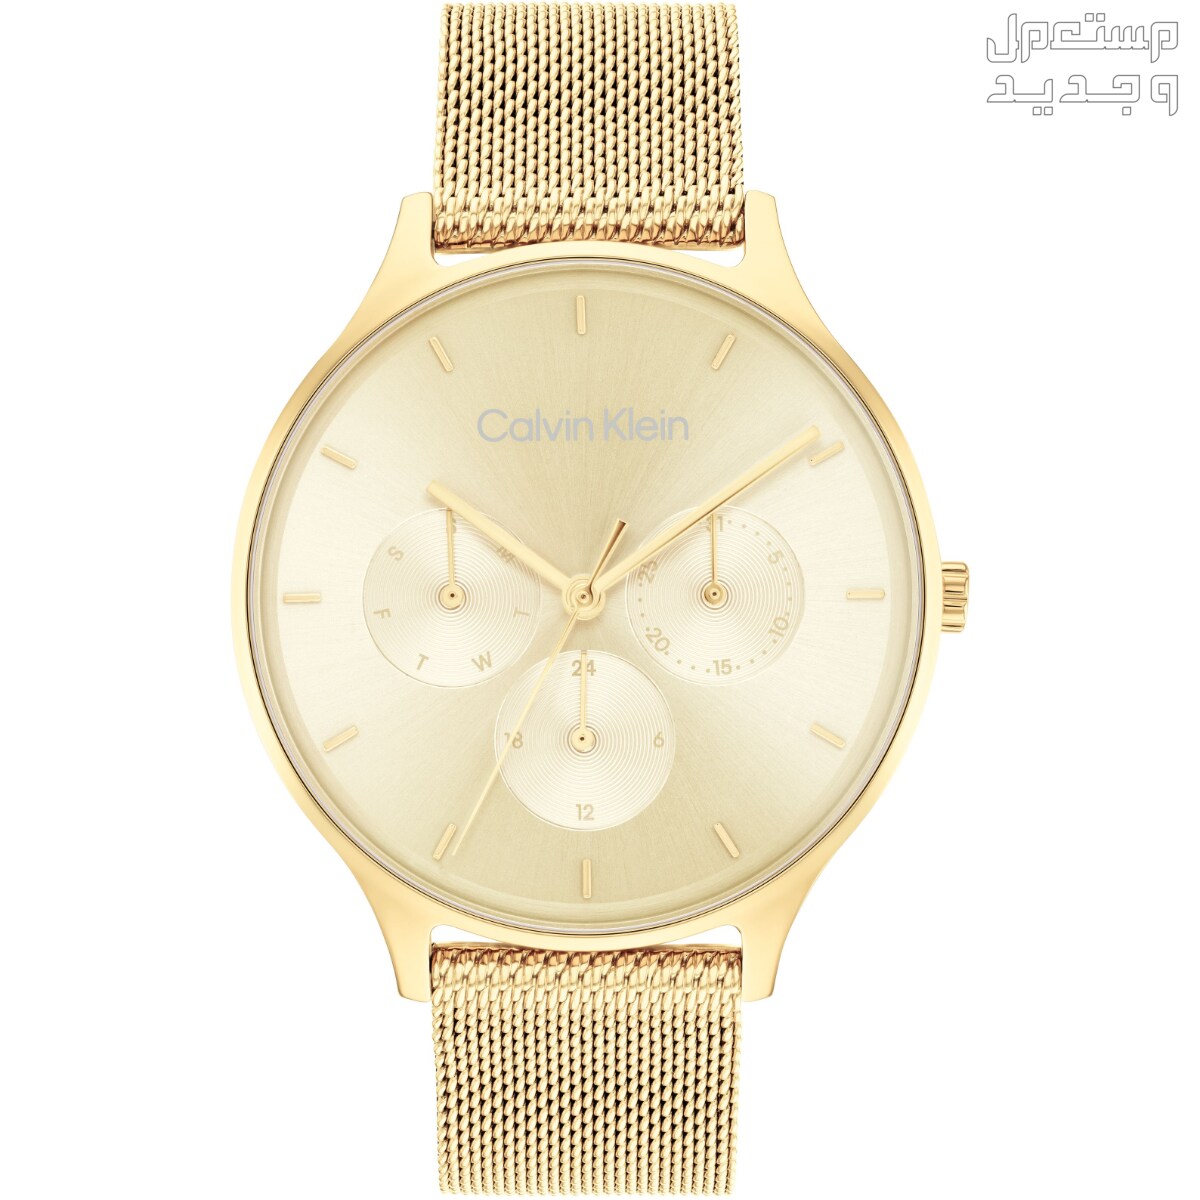 أنواع ساعات يد ذهب نسائية واسعارها في جيبوتي ساعة Calvin Klein Timeless Multifunction Day and Date Gold Steel Watch 25200103